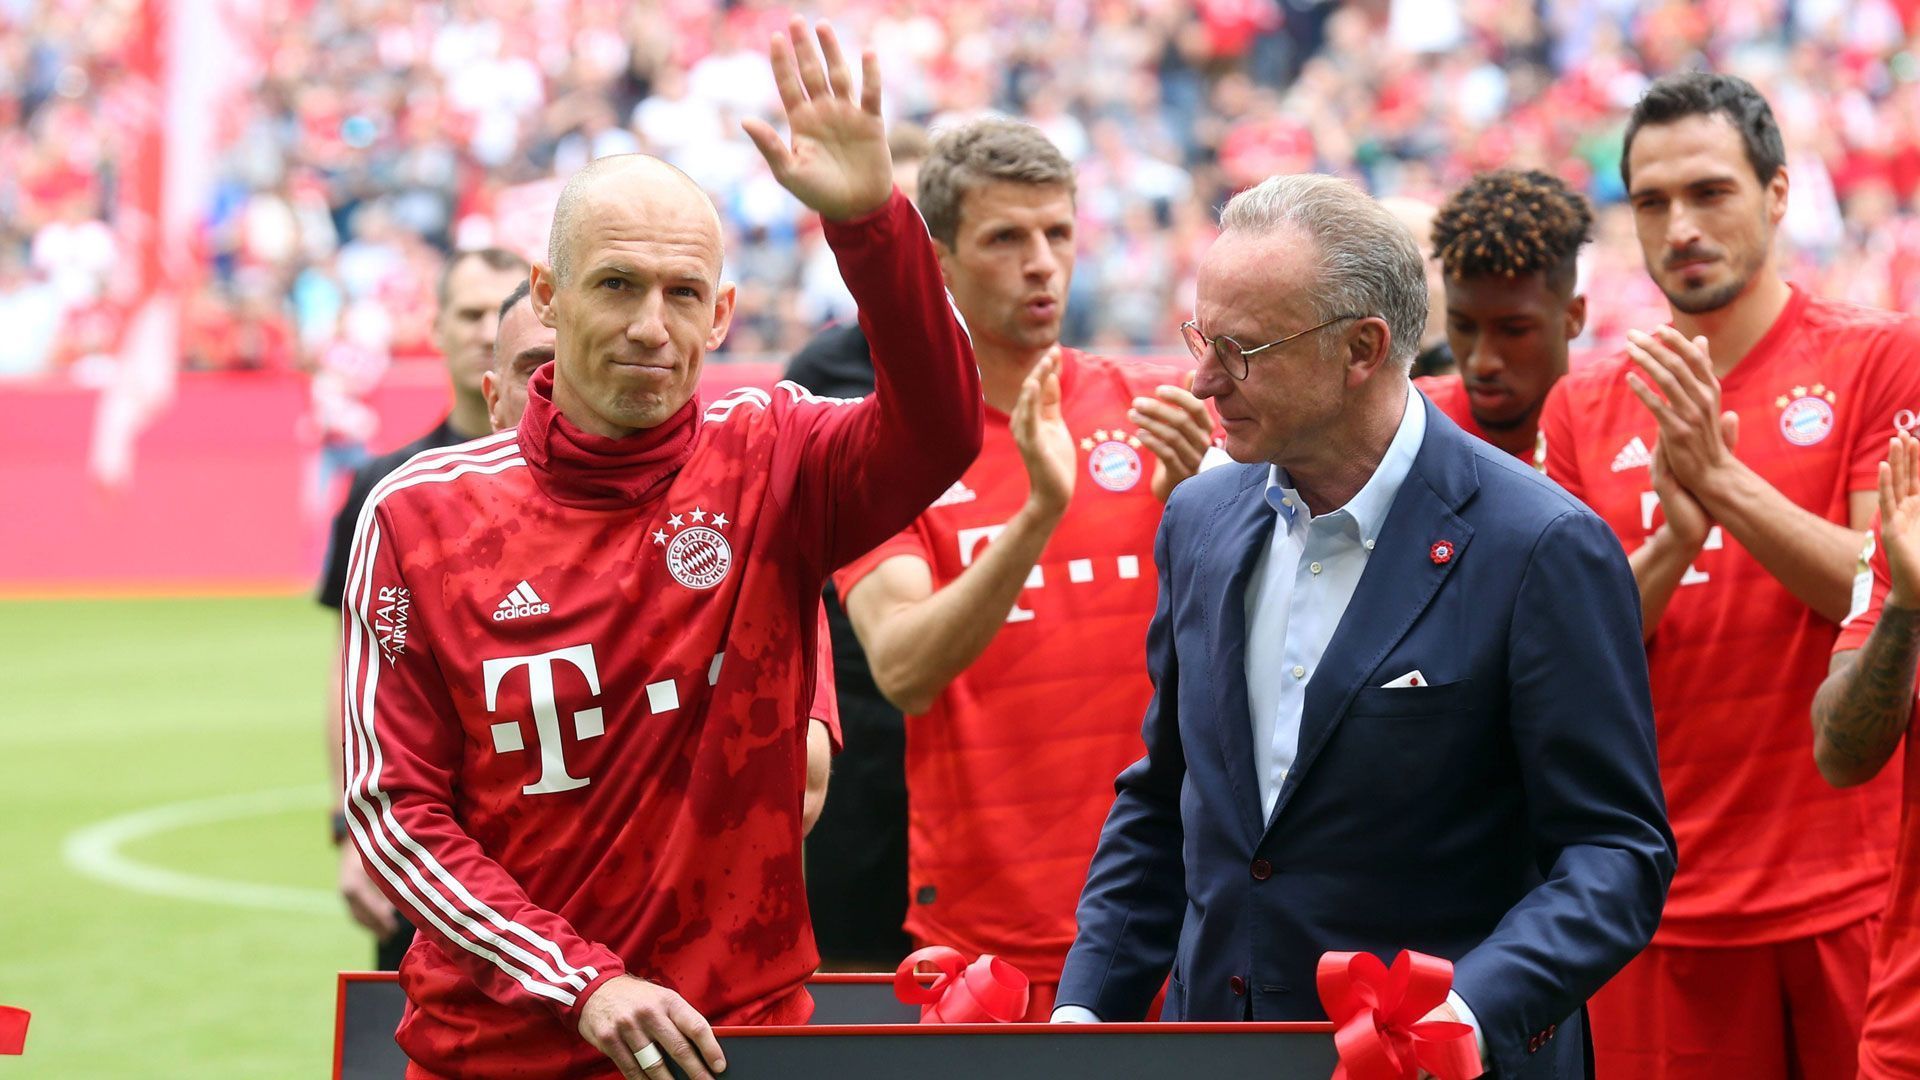 
                <strong>Arjen Robben</strong><br>
                Wechsel zur Saison: 2019/20 -Pflichtspiele für den FC Bayern: 309 -Pflichtspieltore für den FC Bayern: 144 -Aufnehmender Verein: FC Groningen
              